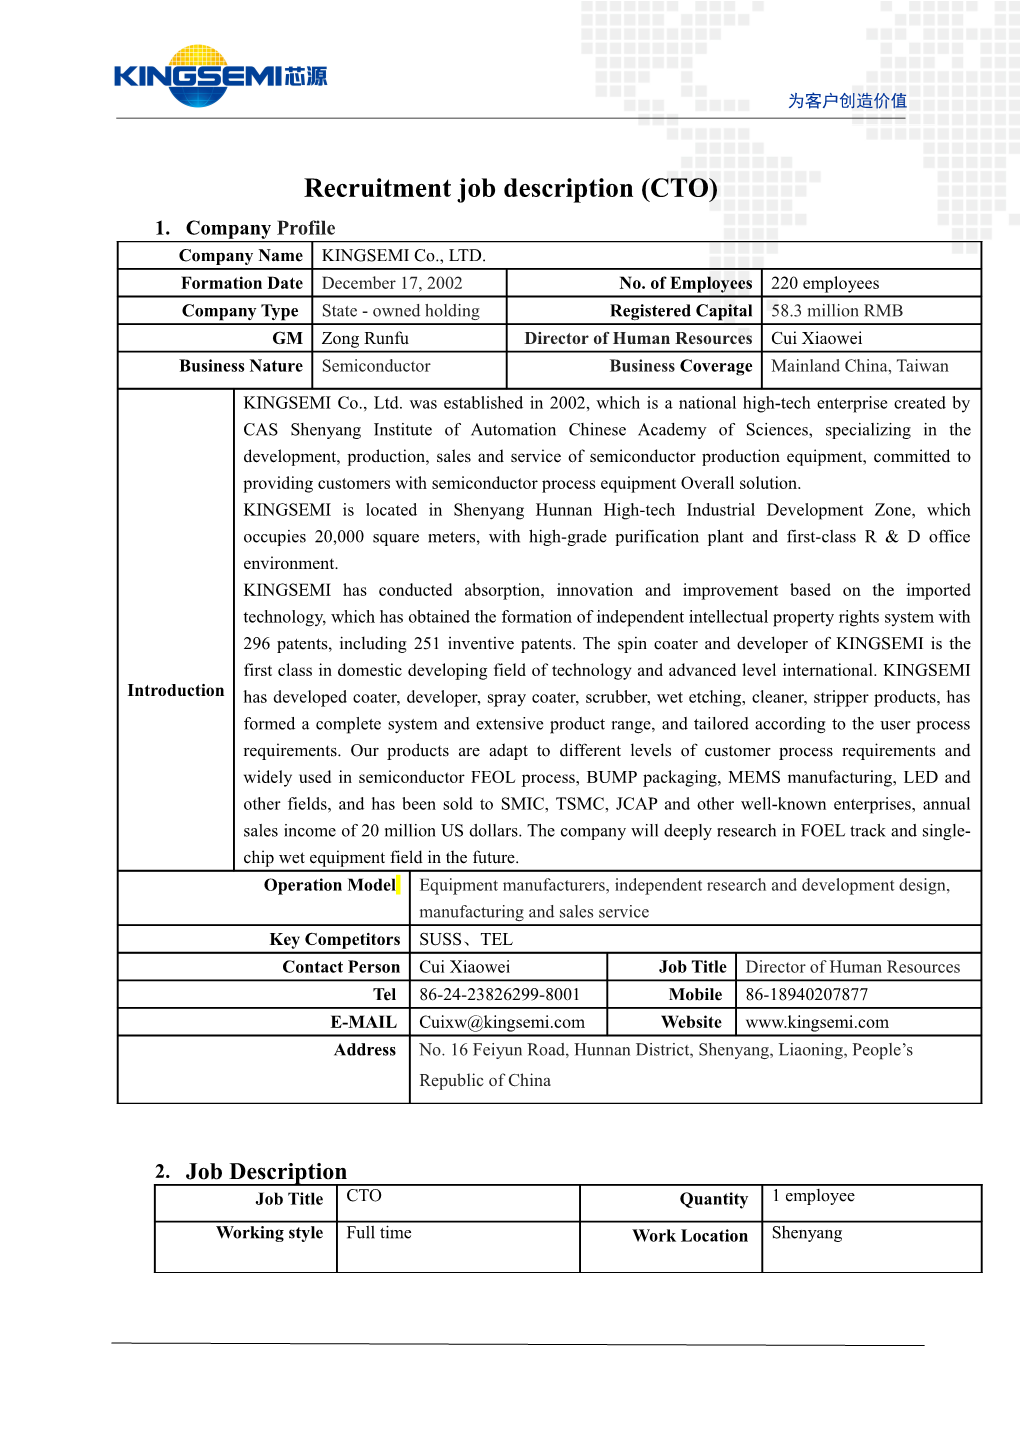 Recruitment Job Description (CTO)